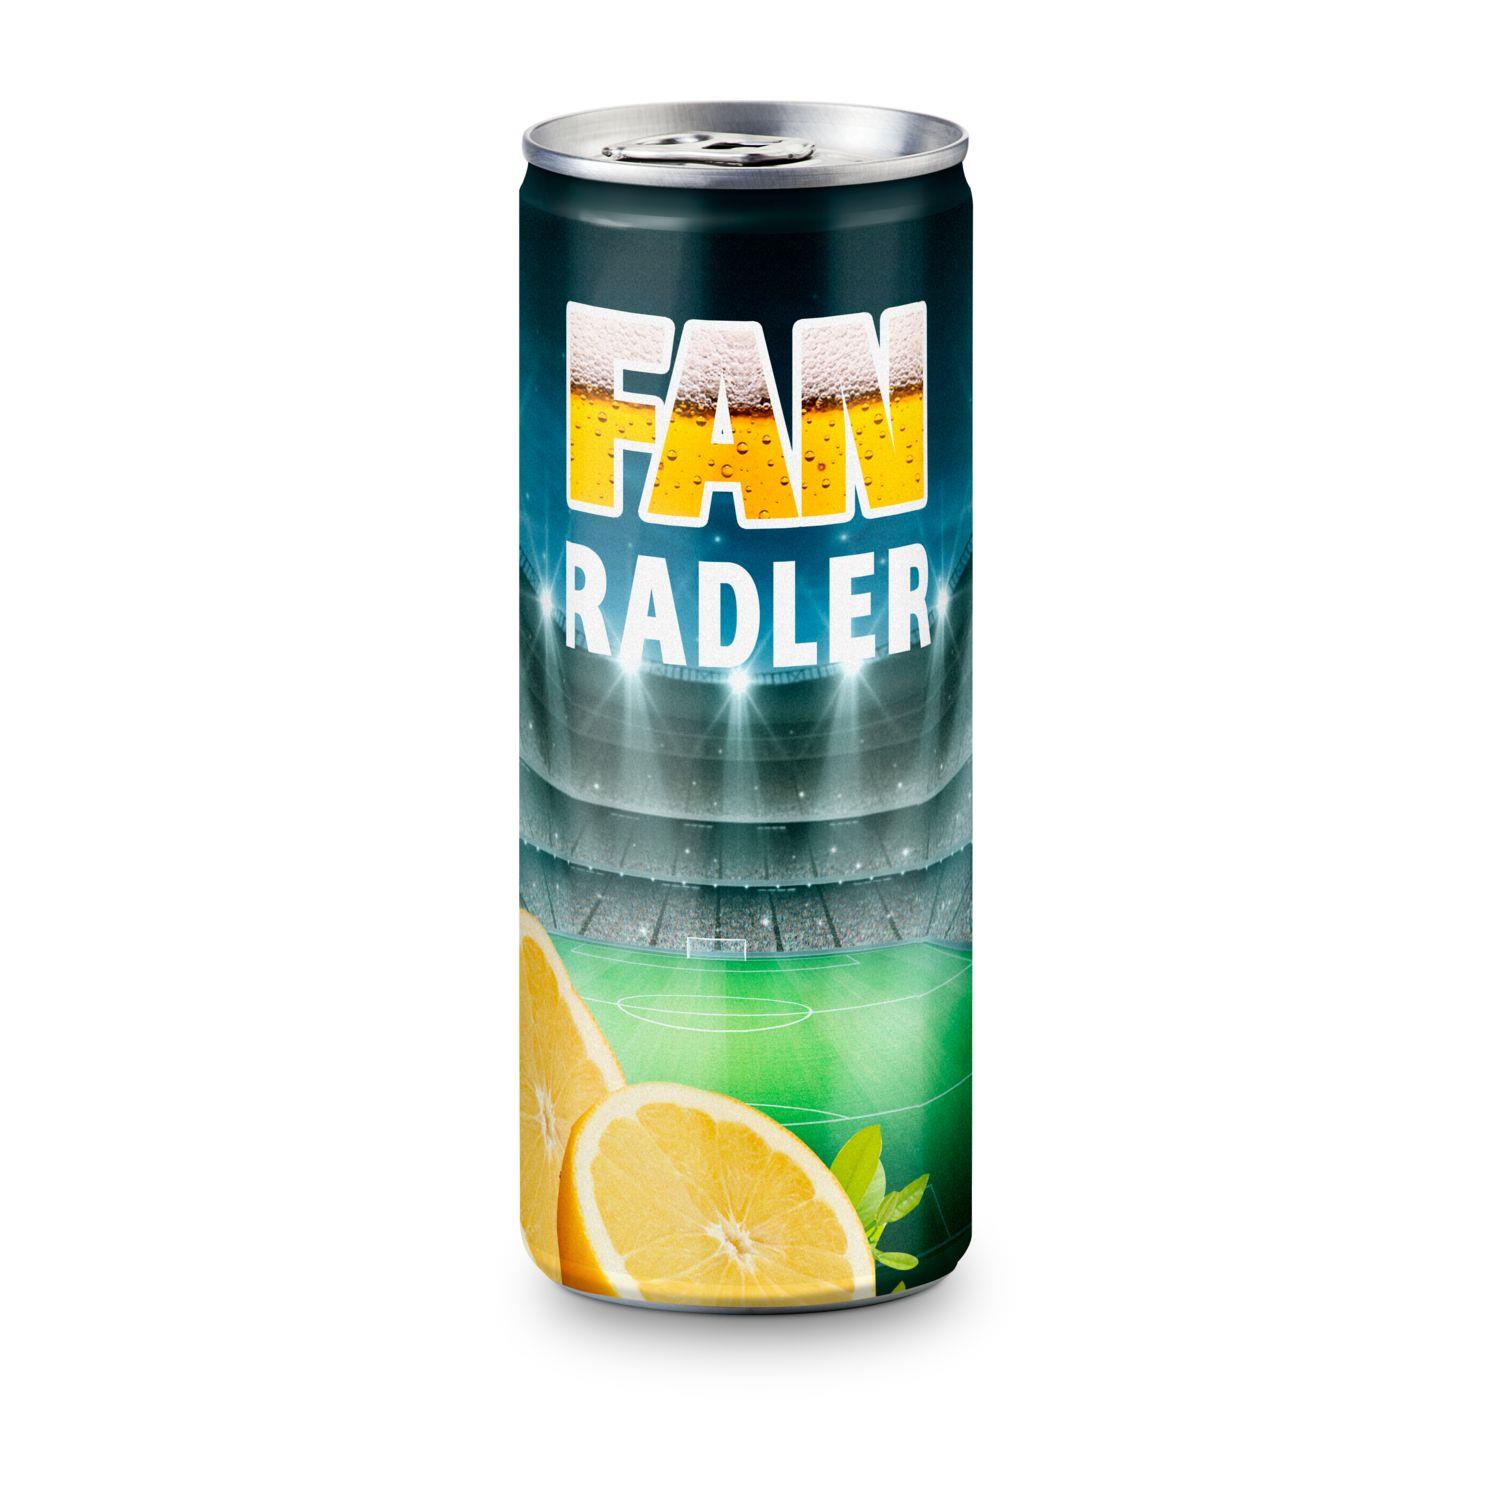 Radler - Bier und Zitronenlimonade - FB-Etikett Soft